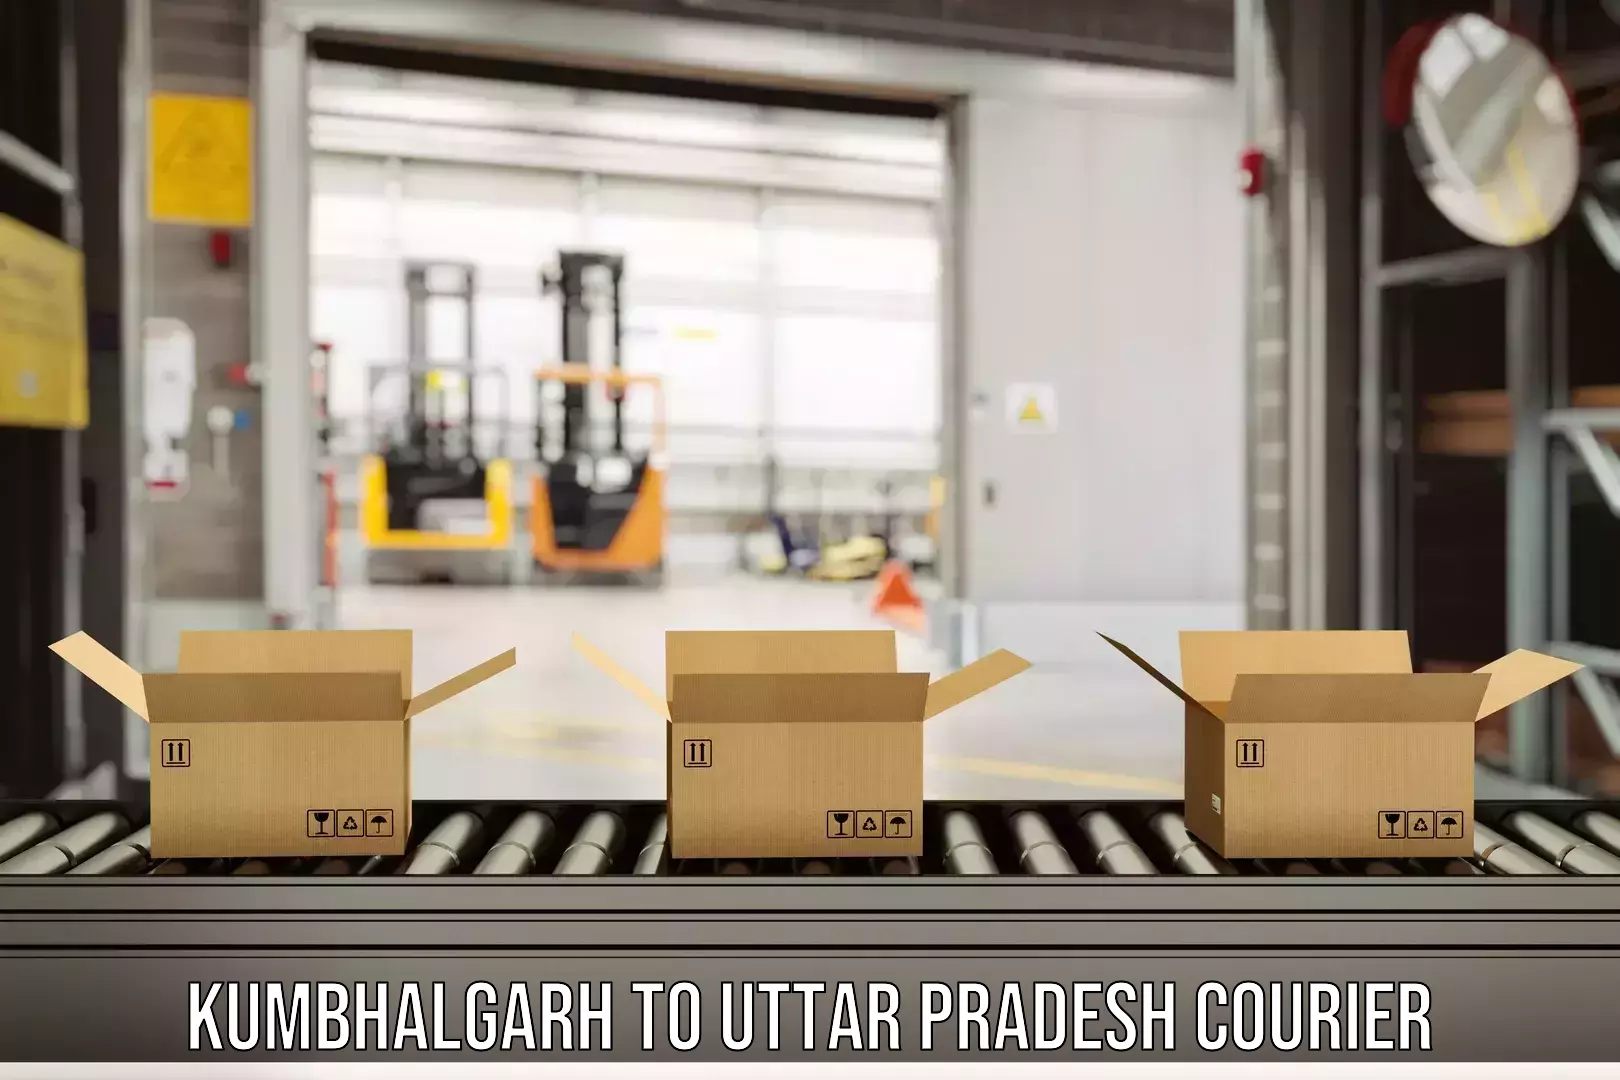 Express delivery capabilities in Kumbhalgarh to Uttar Pradesh